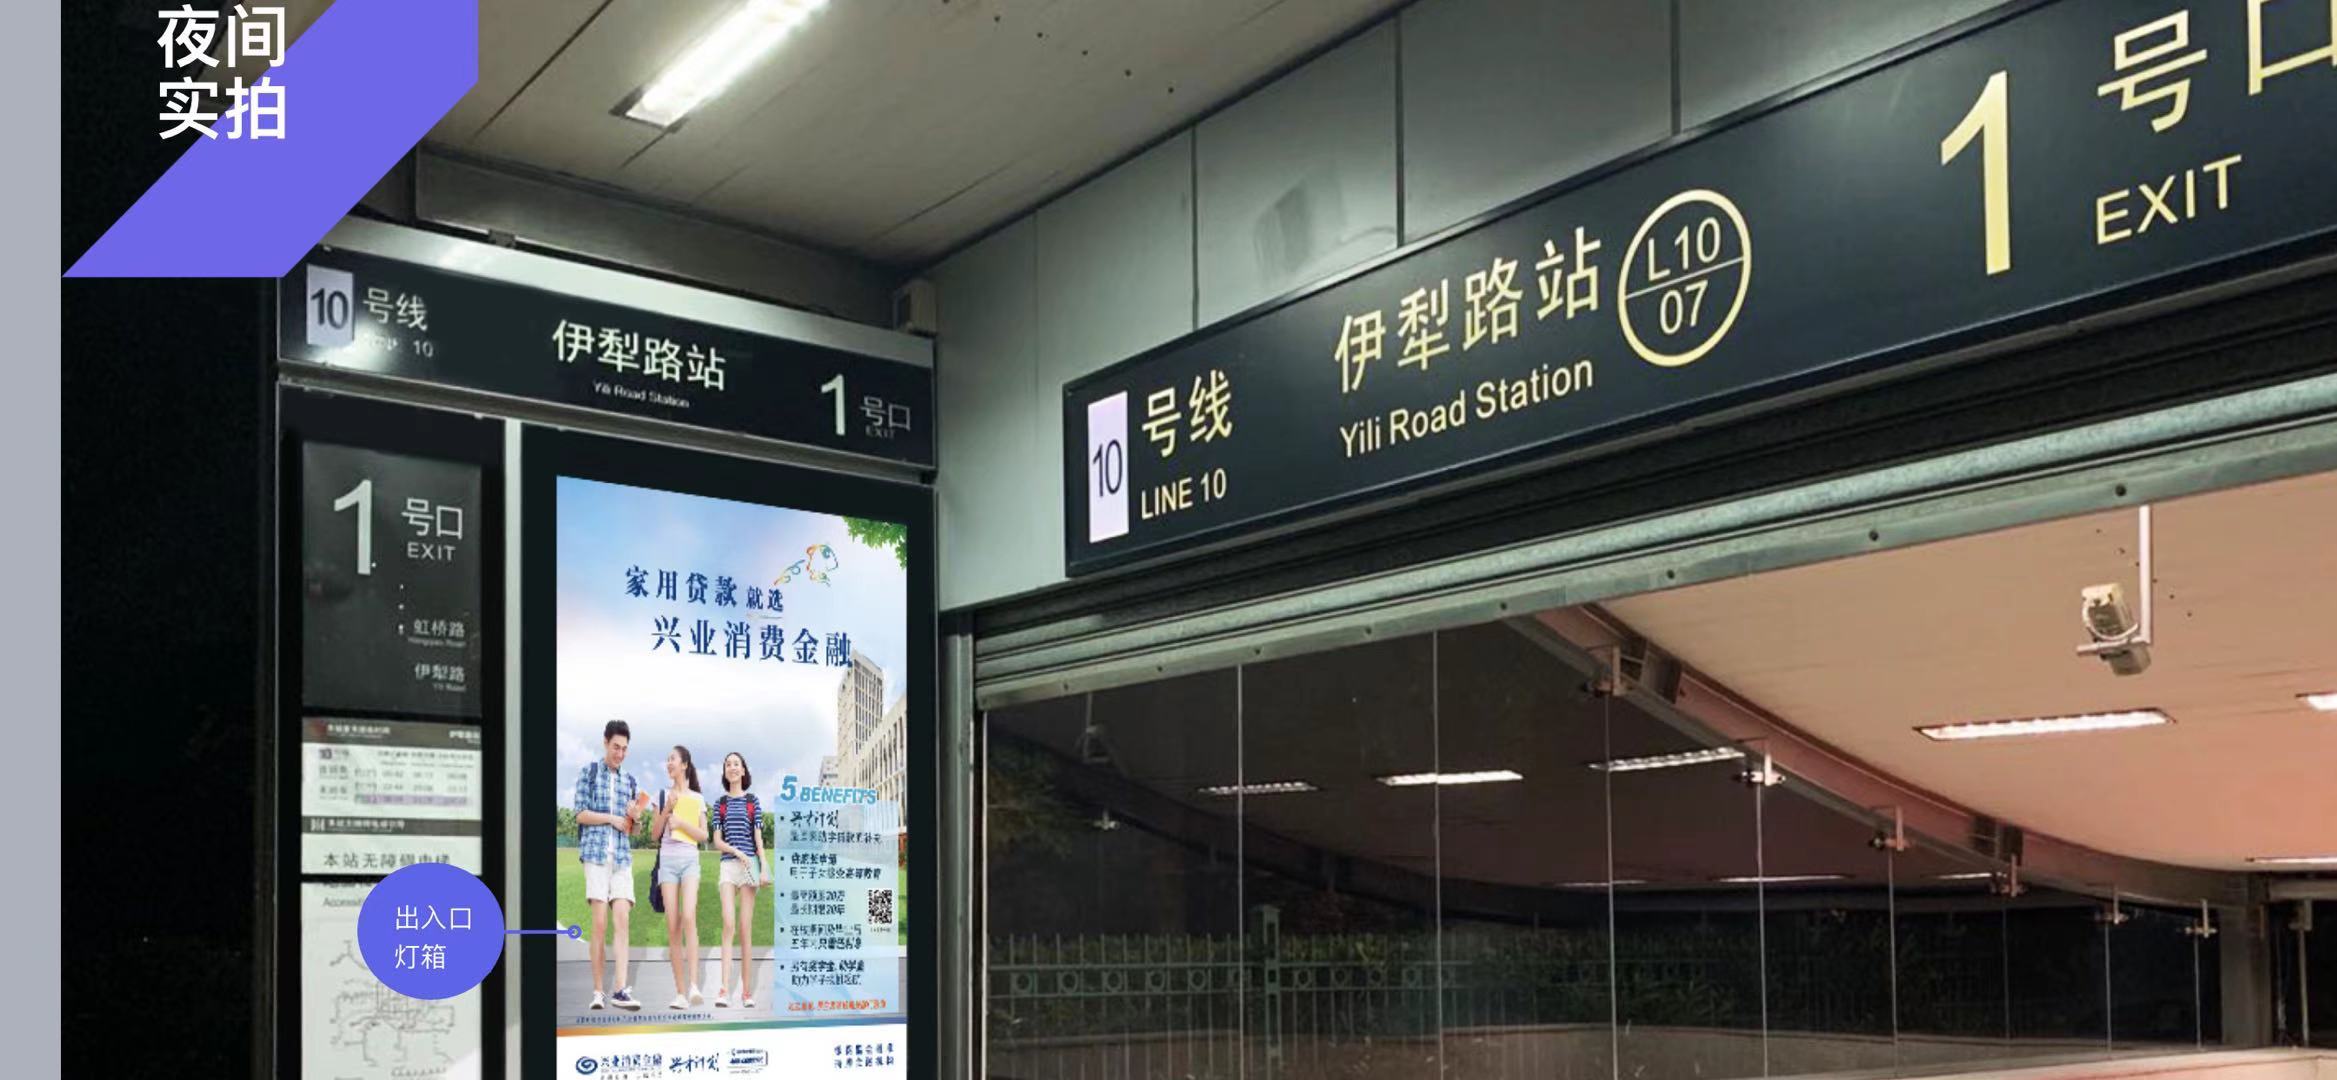 上海地铁广告发布投放